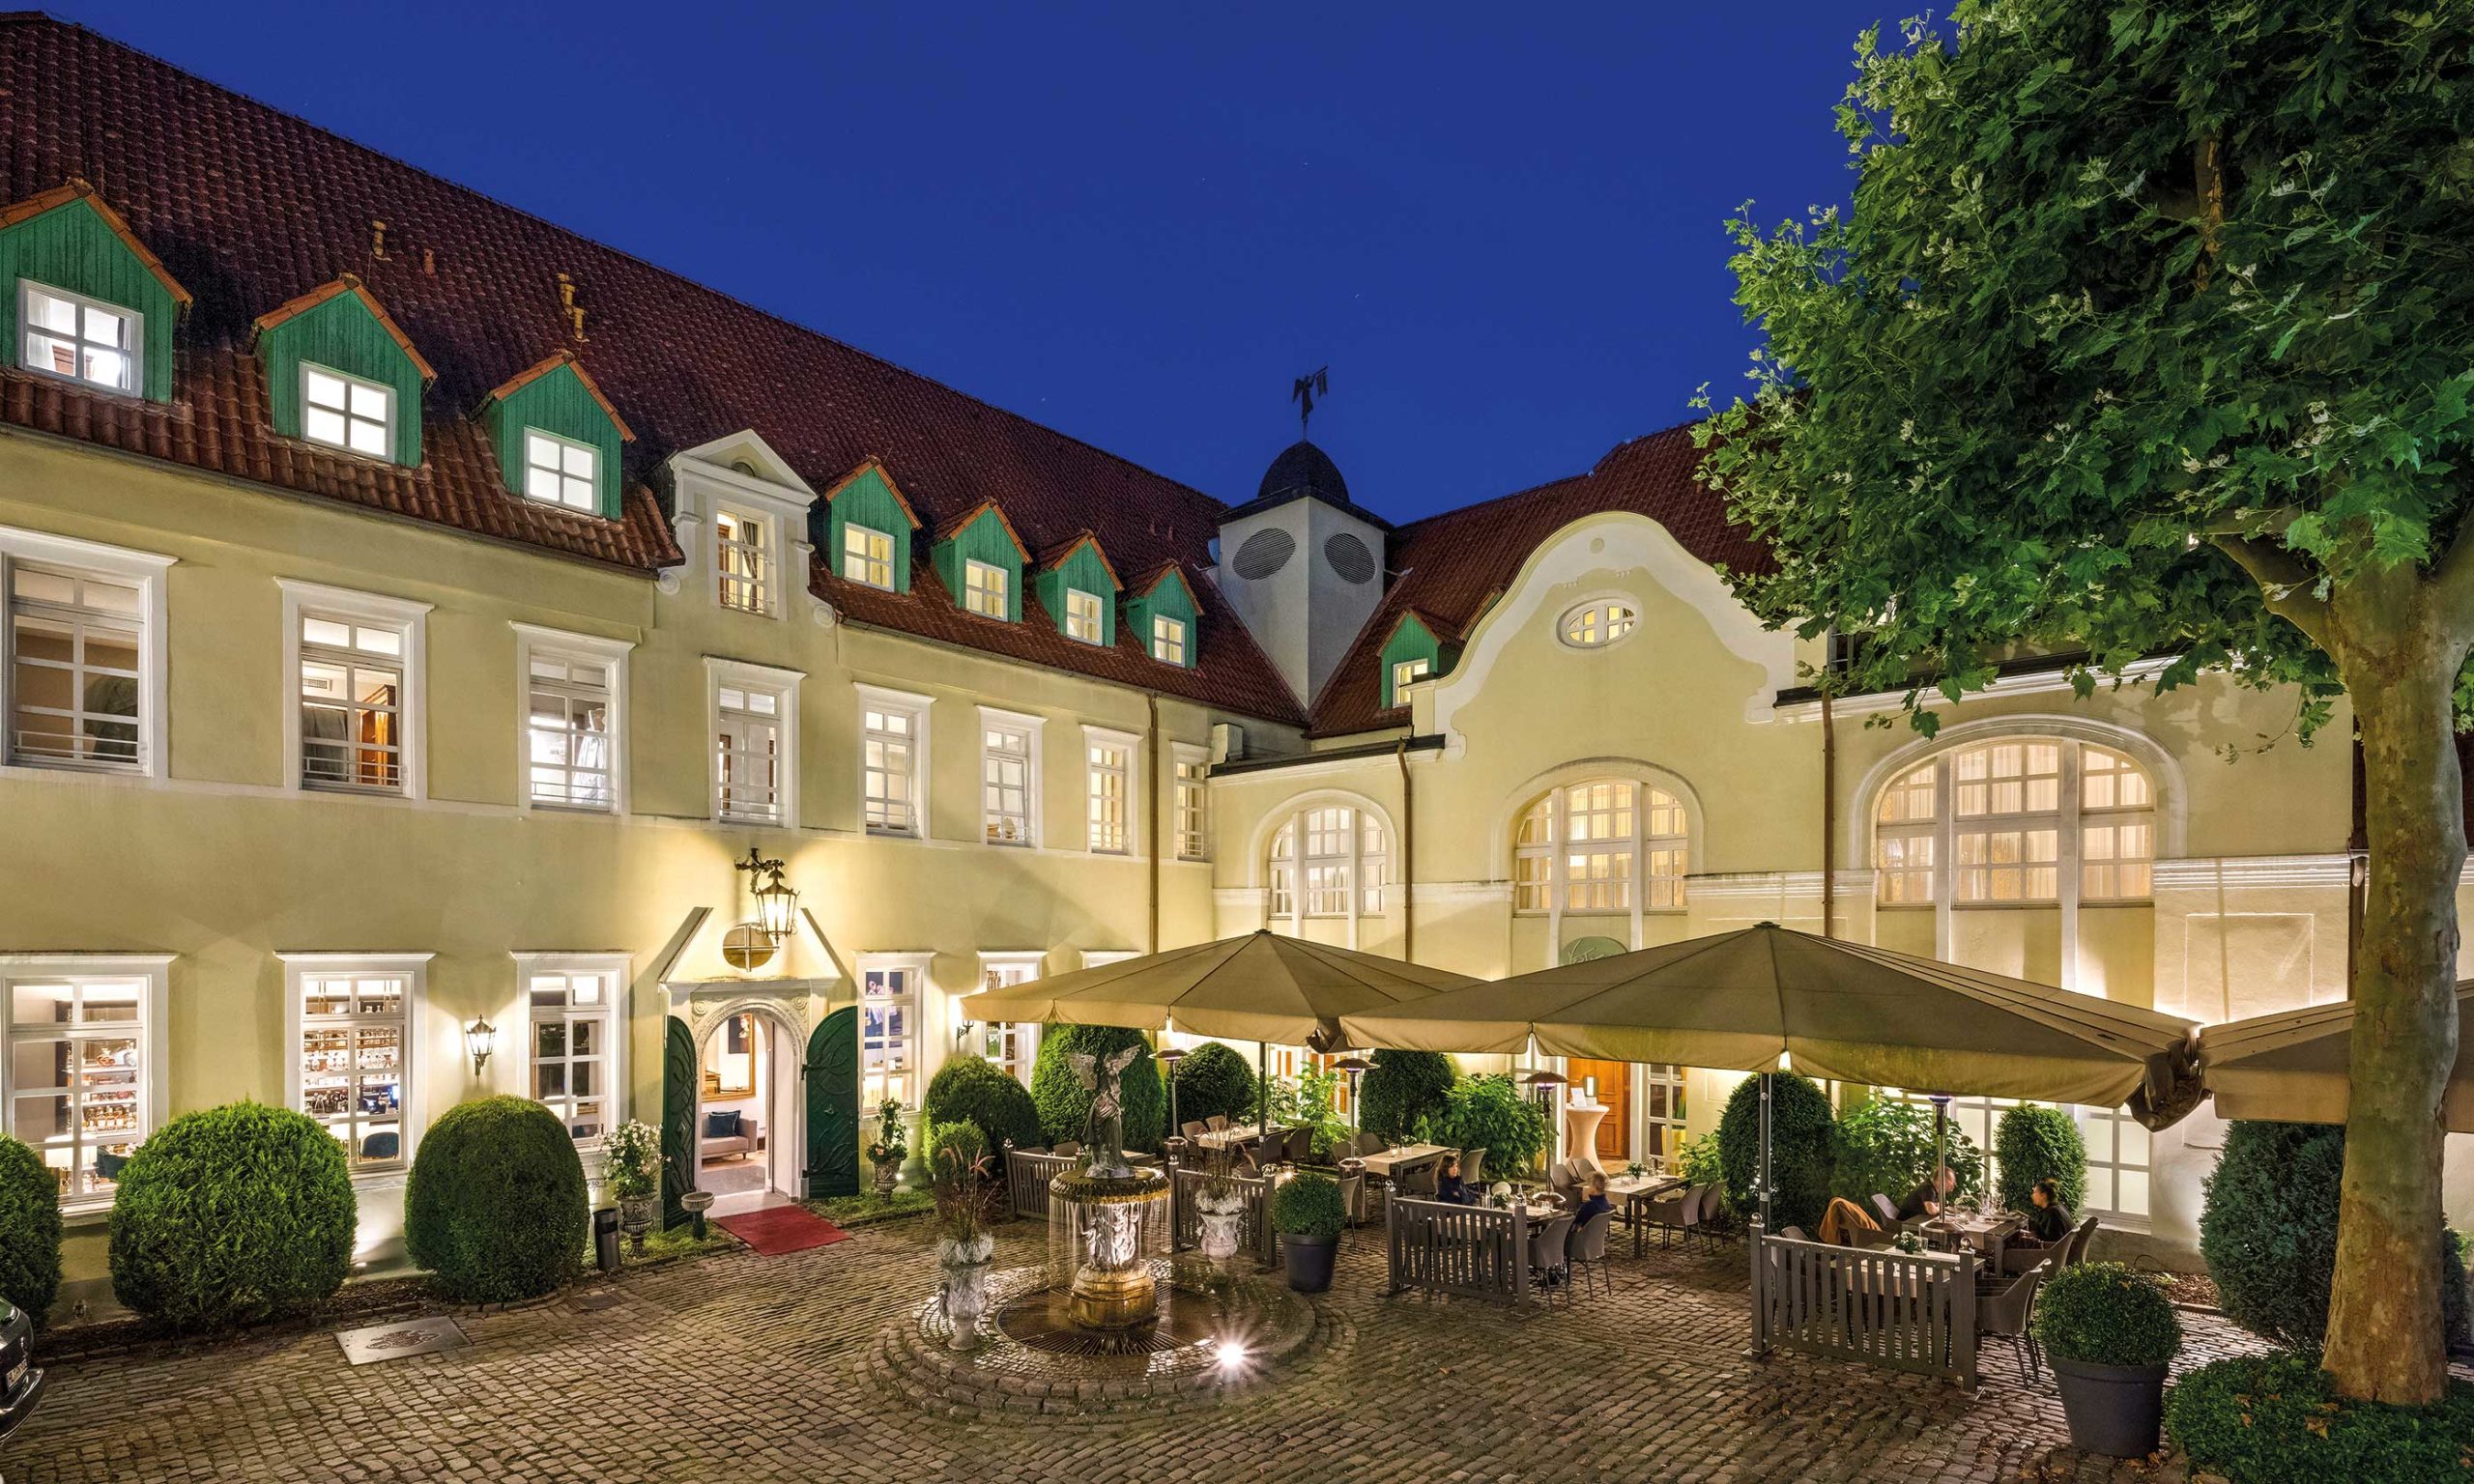 Außenansicht mit außengastronomie bereich im grünen parkhotel engelsburg recklinghausen romantisches hotel